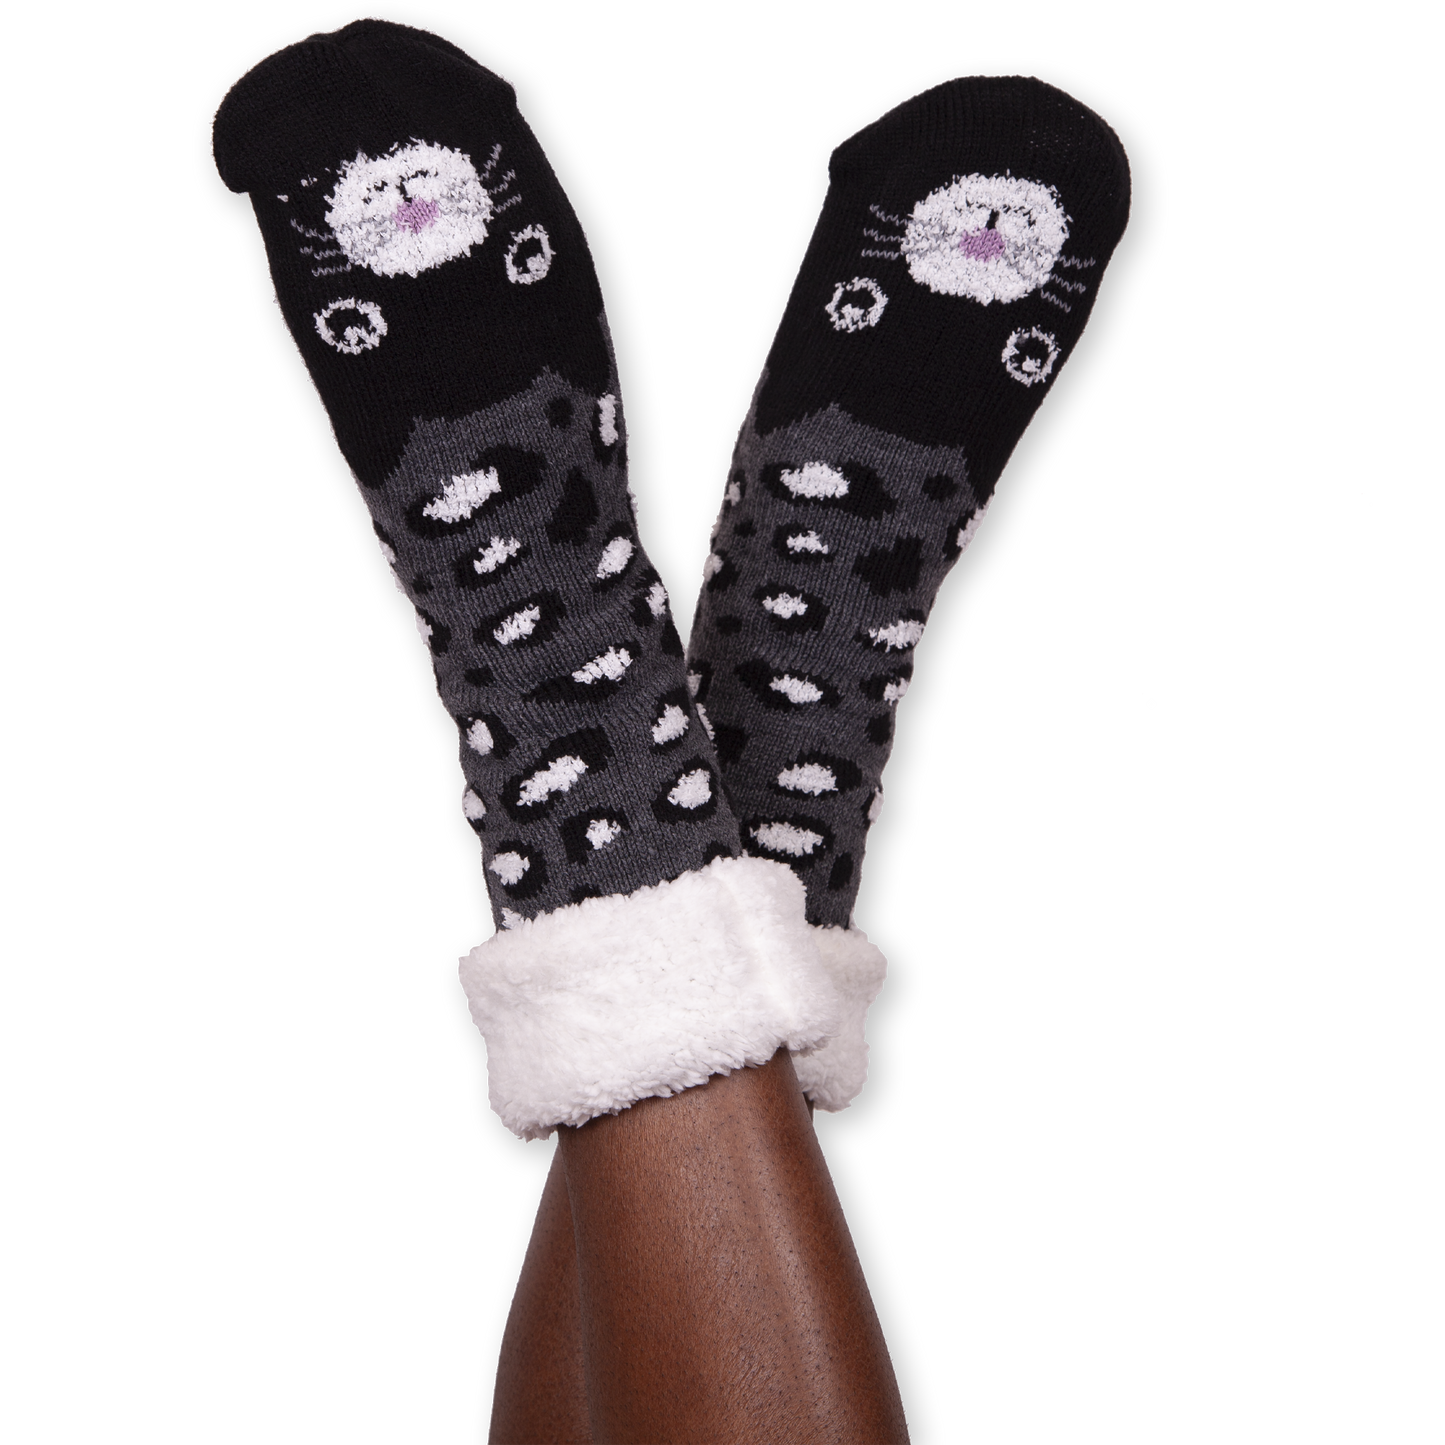 Women's Black Cat Cozy Warmer Slipper Socks with Sherpa Lining